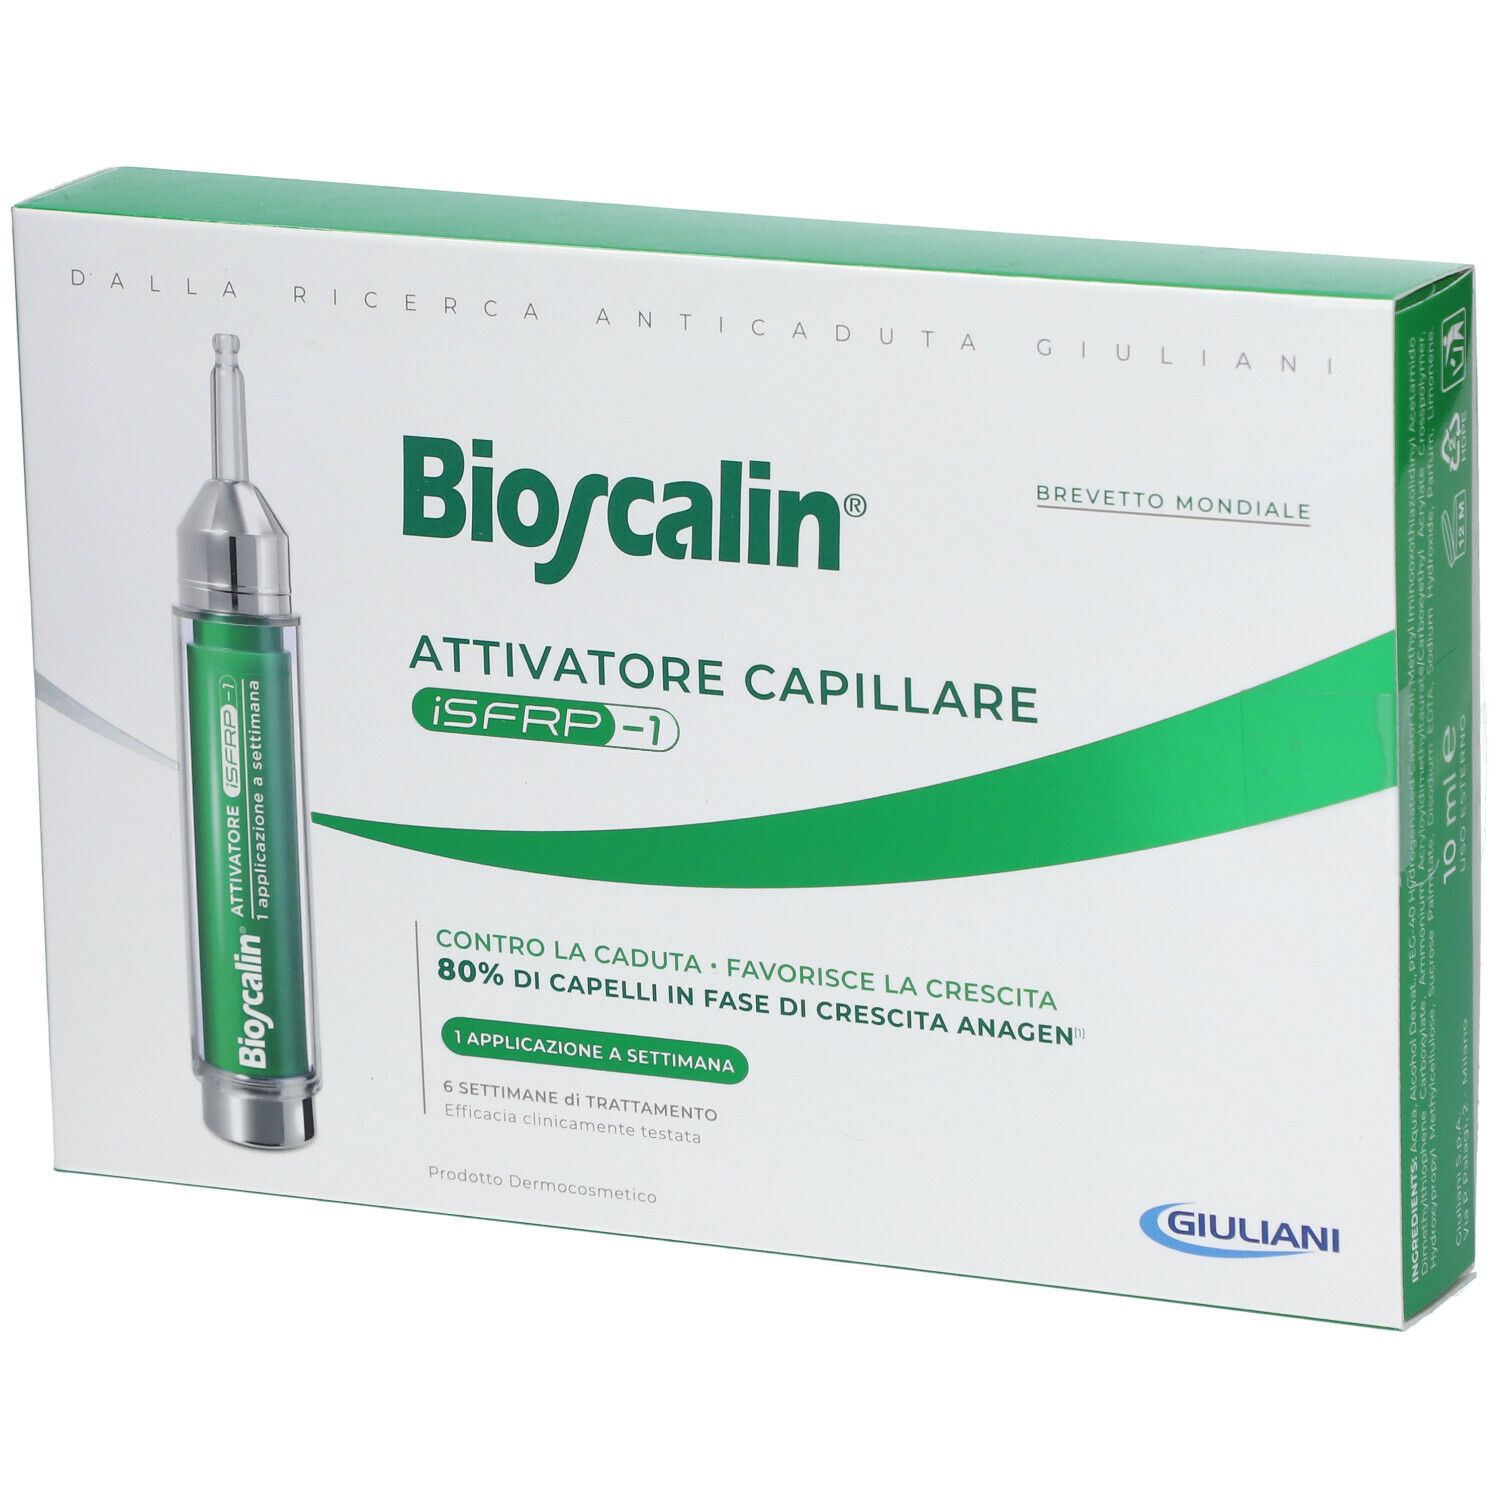 Image of Bioscalin® Attivatore Capillare iSFRP-1